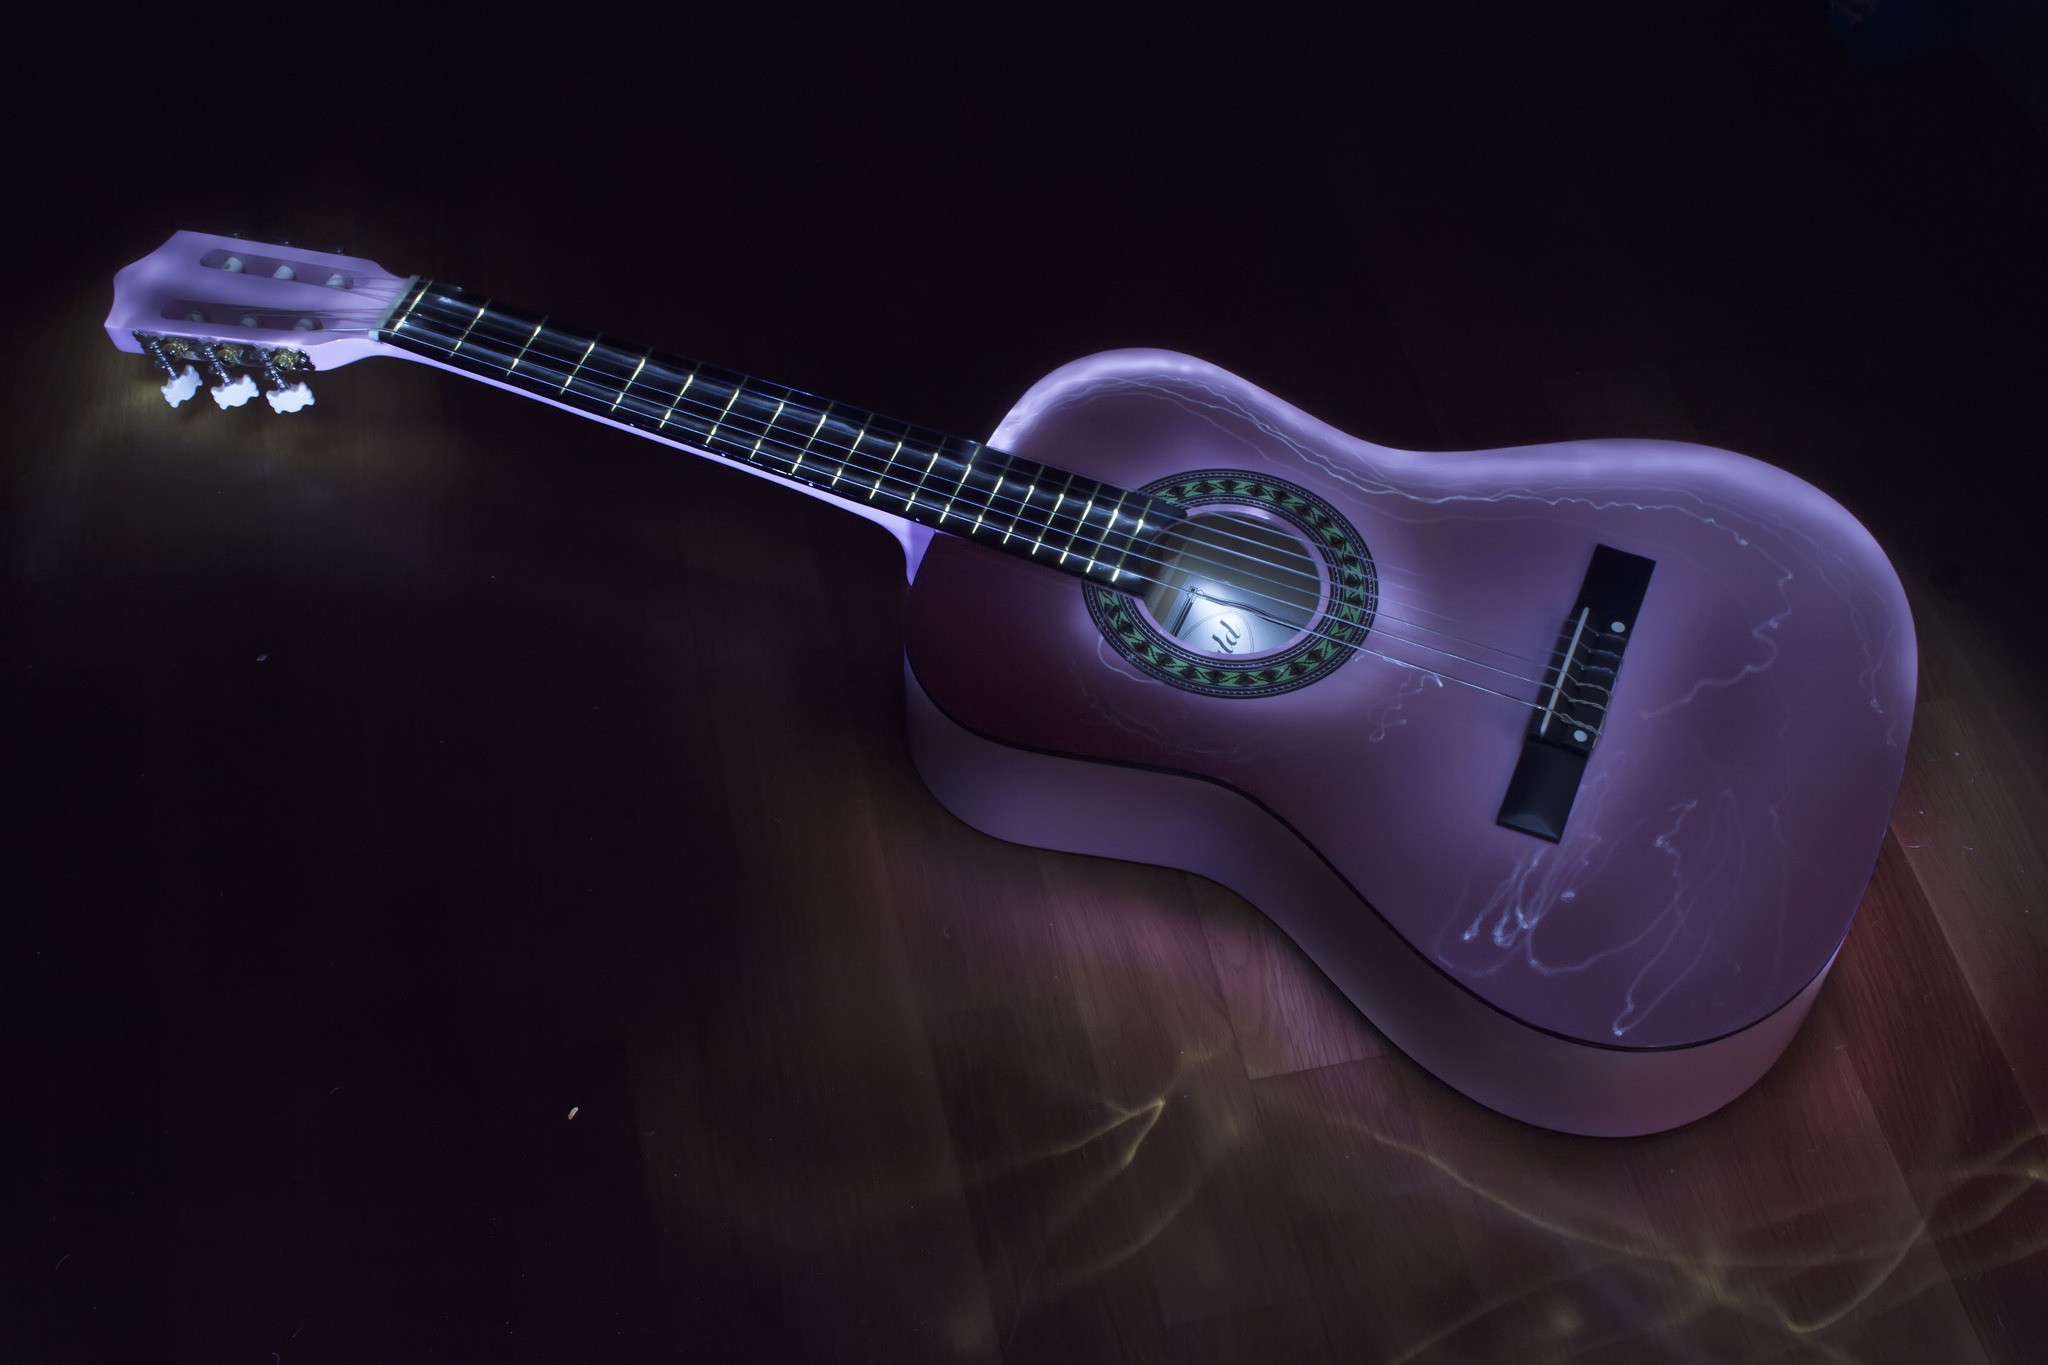 General 2048x1365 music guitar purple musical instrument Bassem Khaled digital art low light